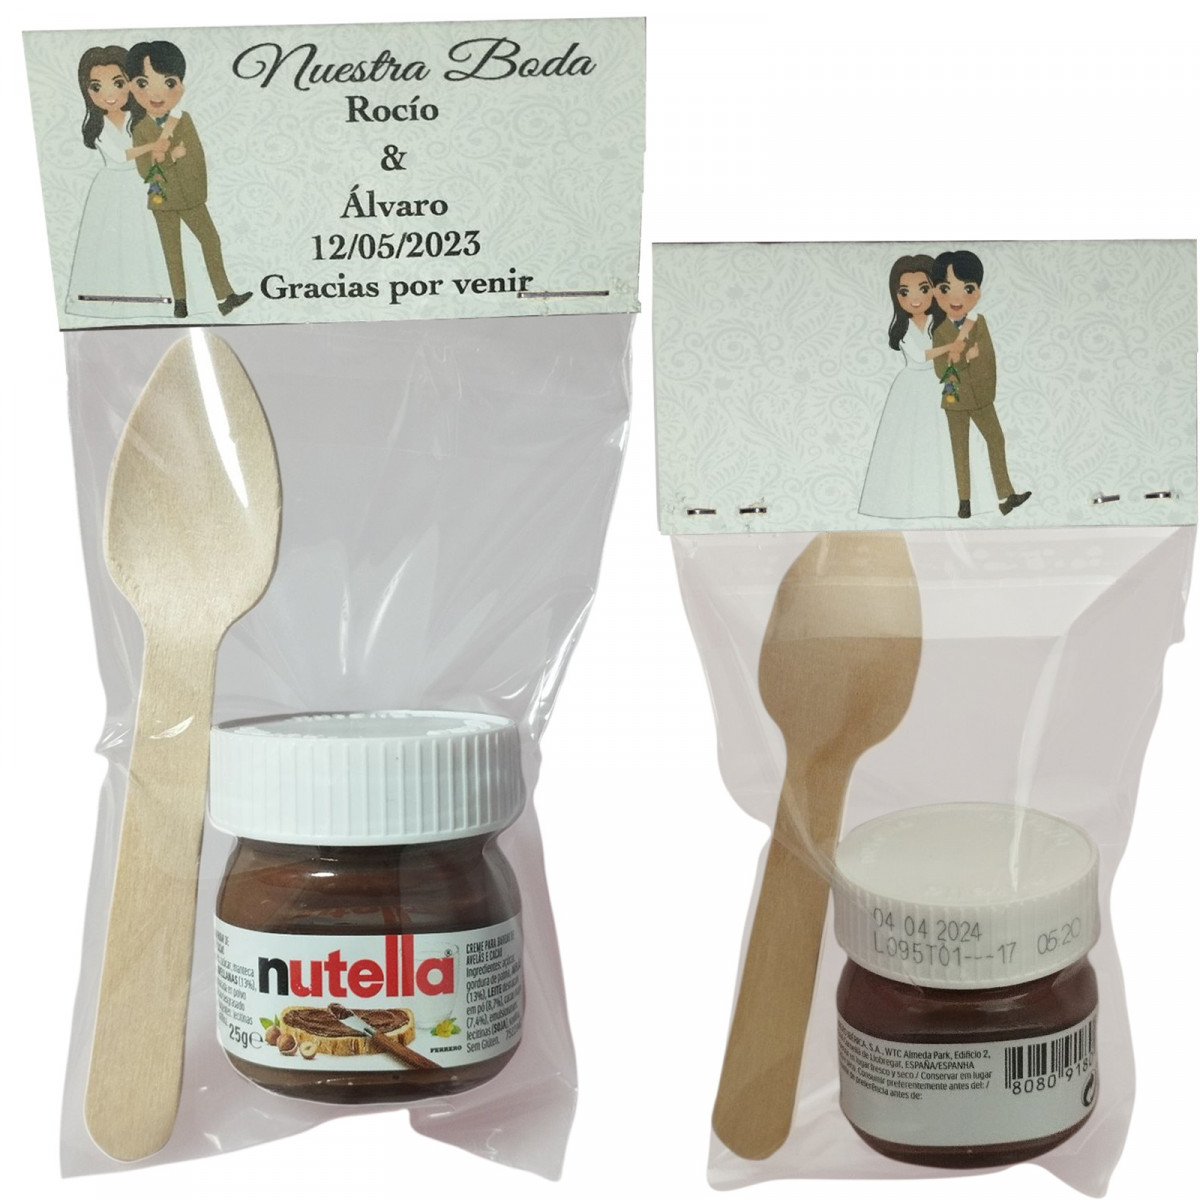 Nutella con chuchara presentata in un sacchetto trasparente con cartoncino personalizzato